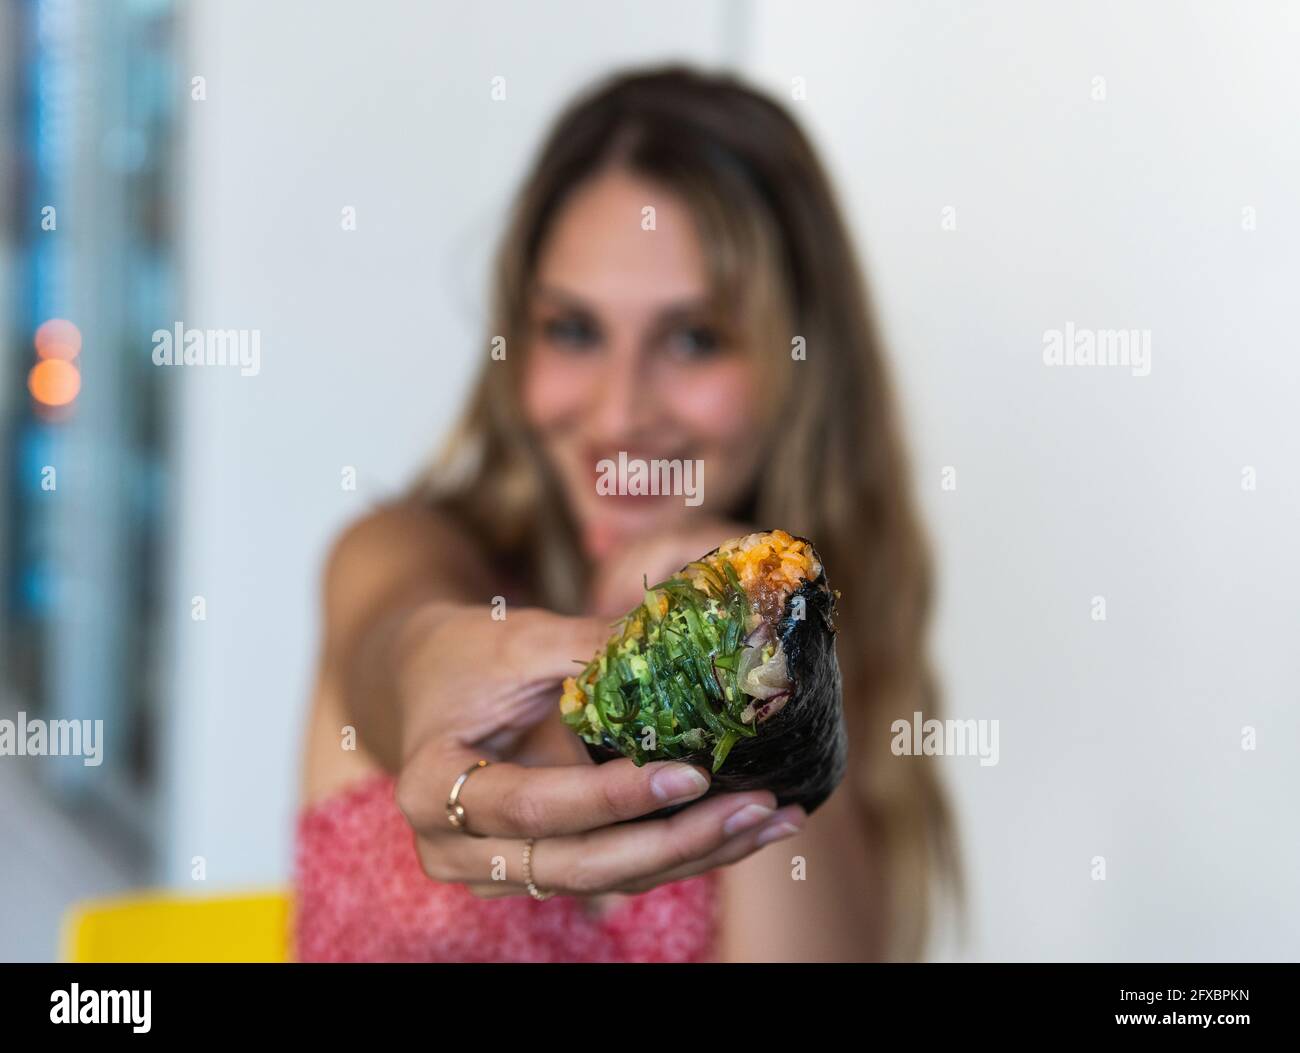 Junge Frau hält Essen, während sie im Restaurant sitzt Stockfoto